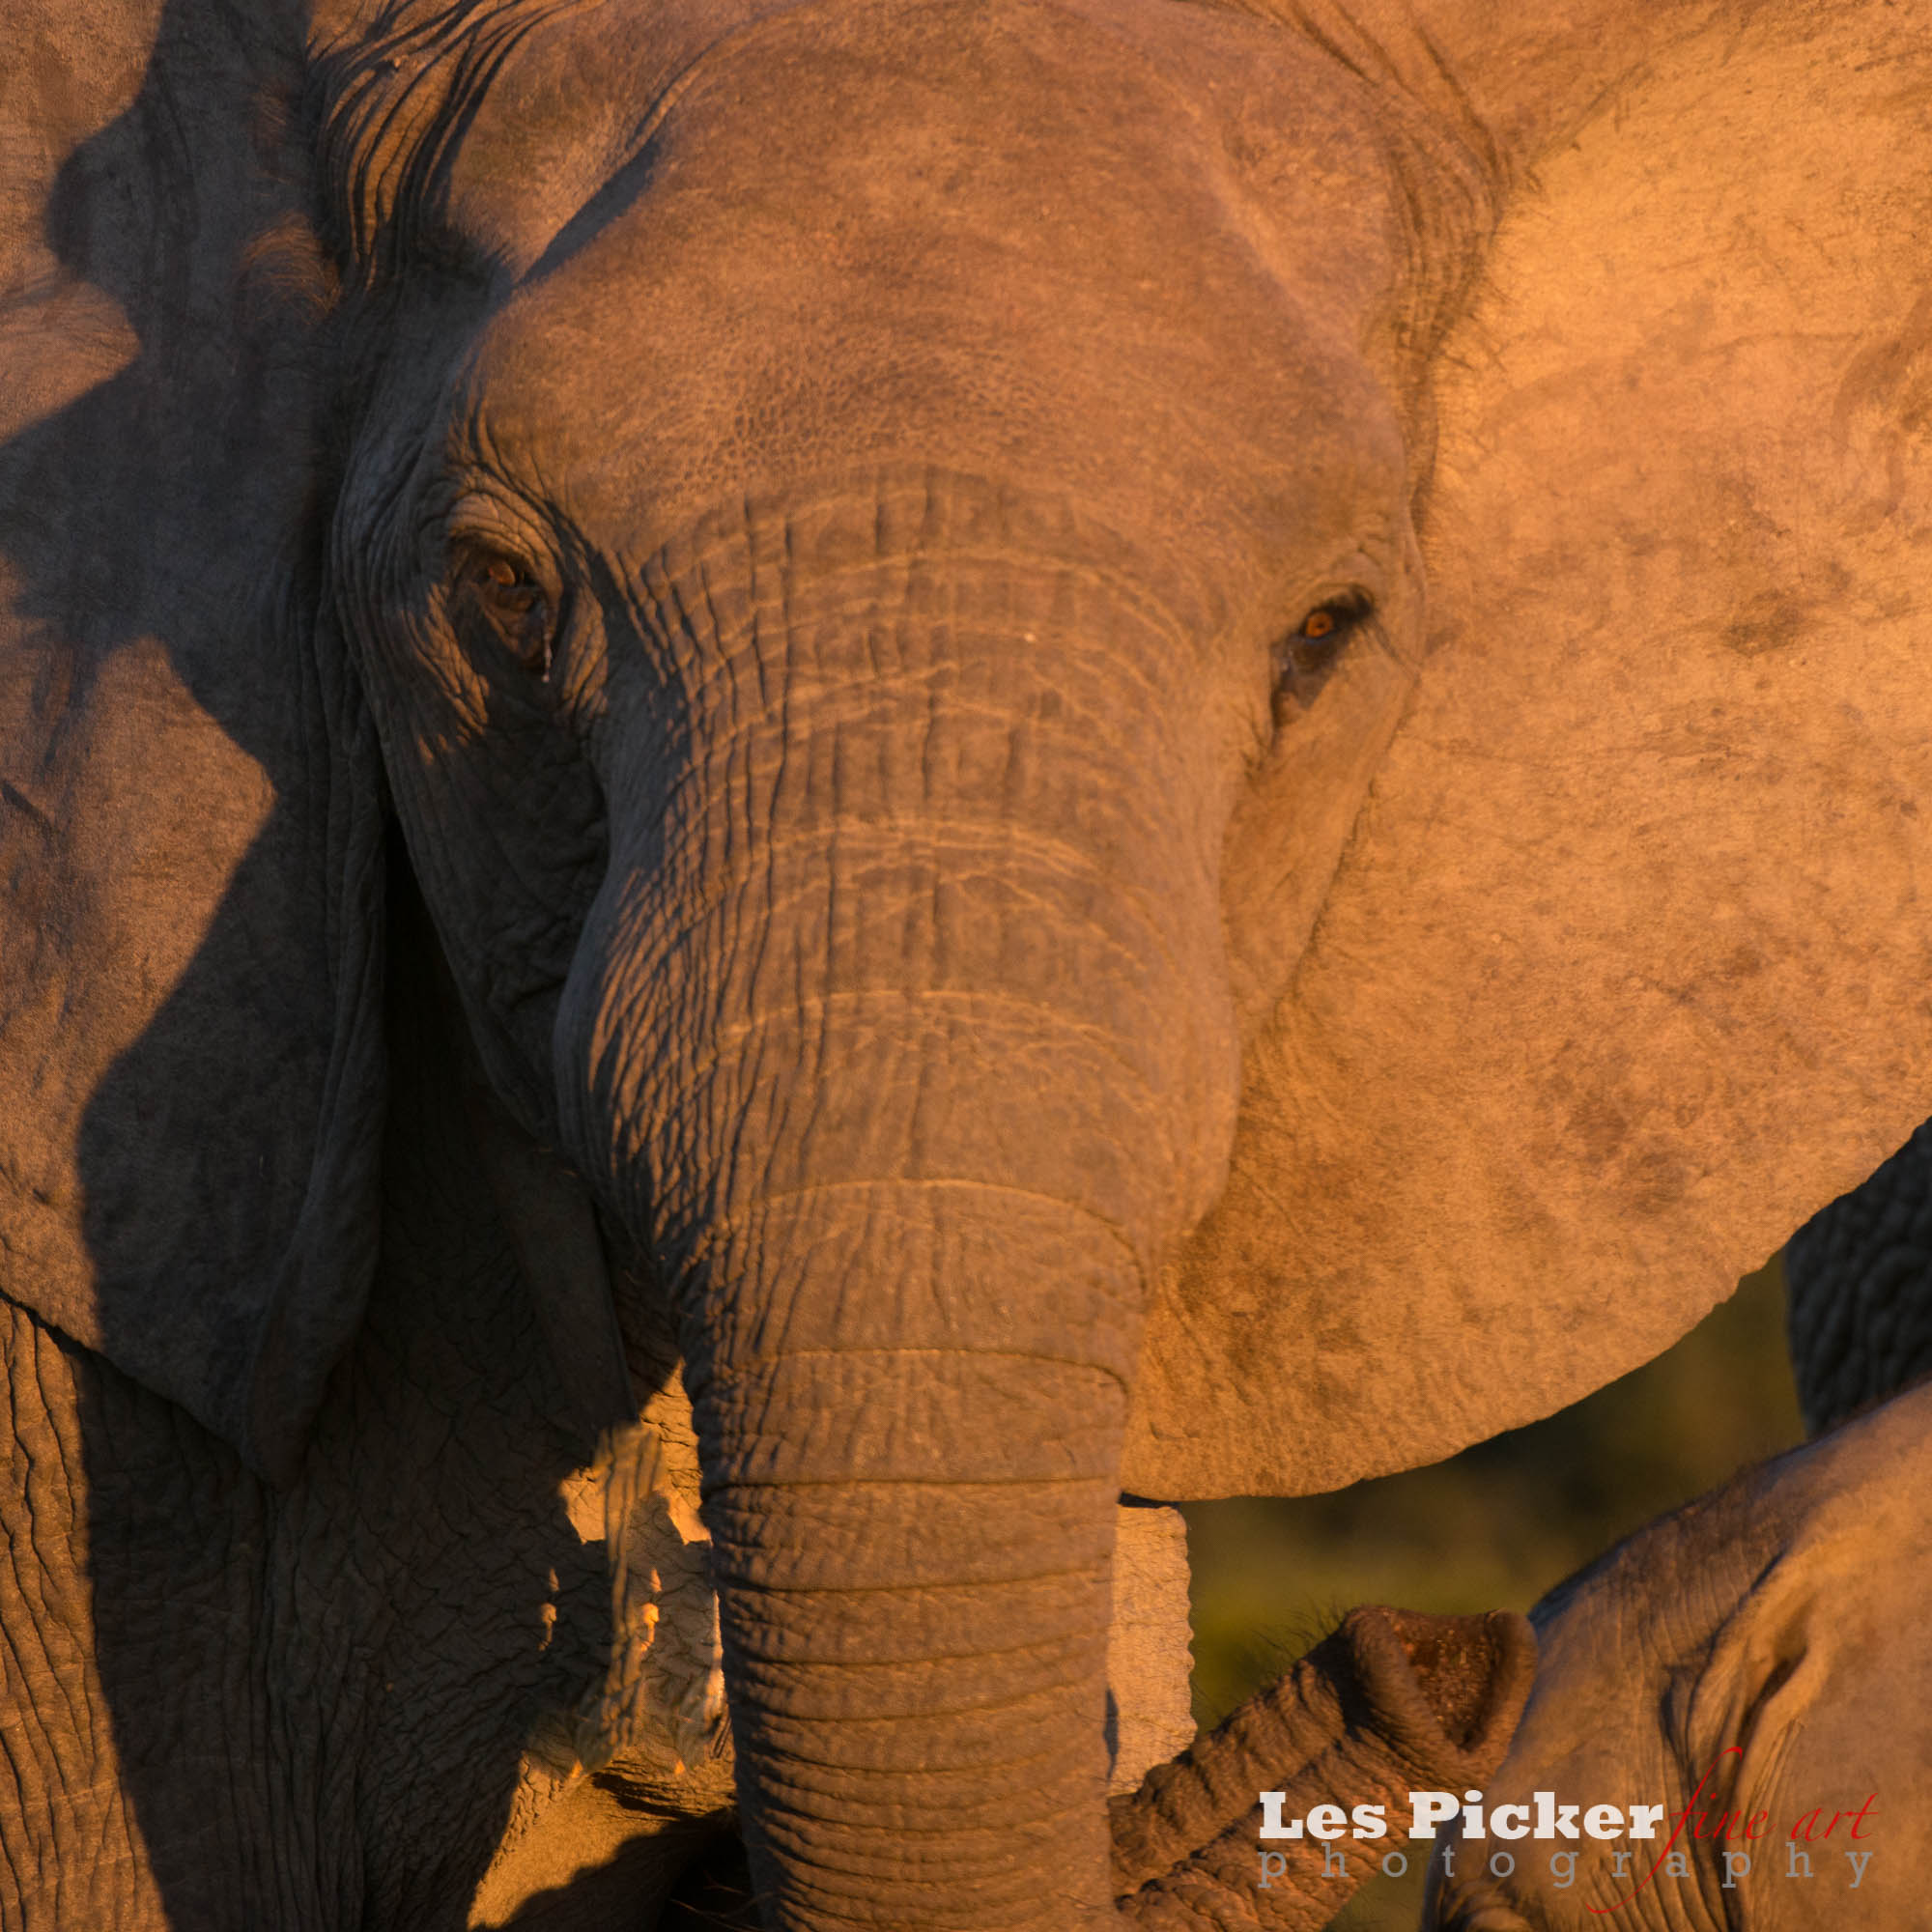 Photographing Elephants